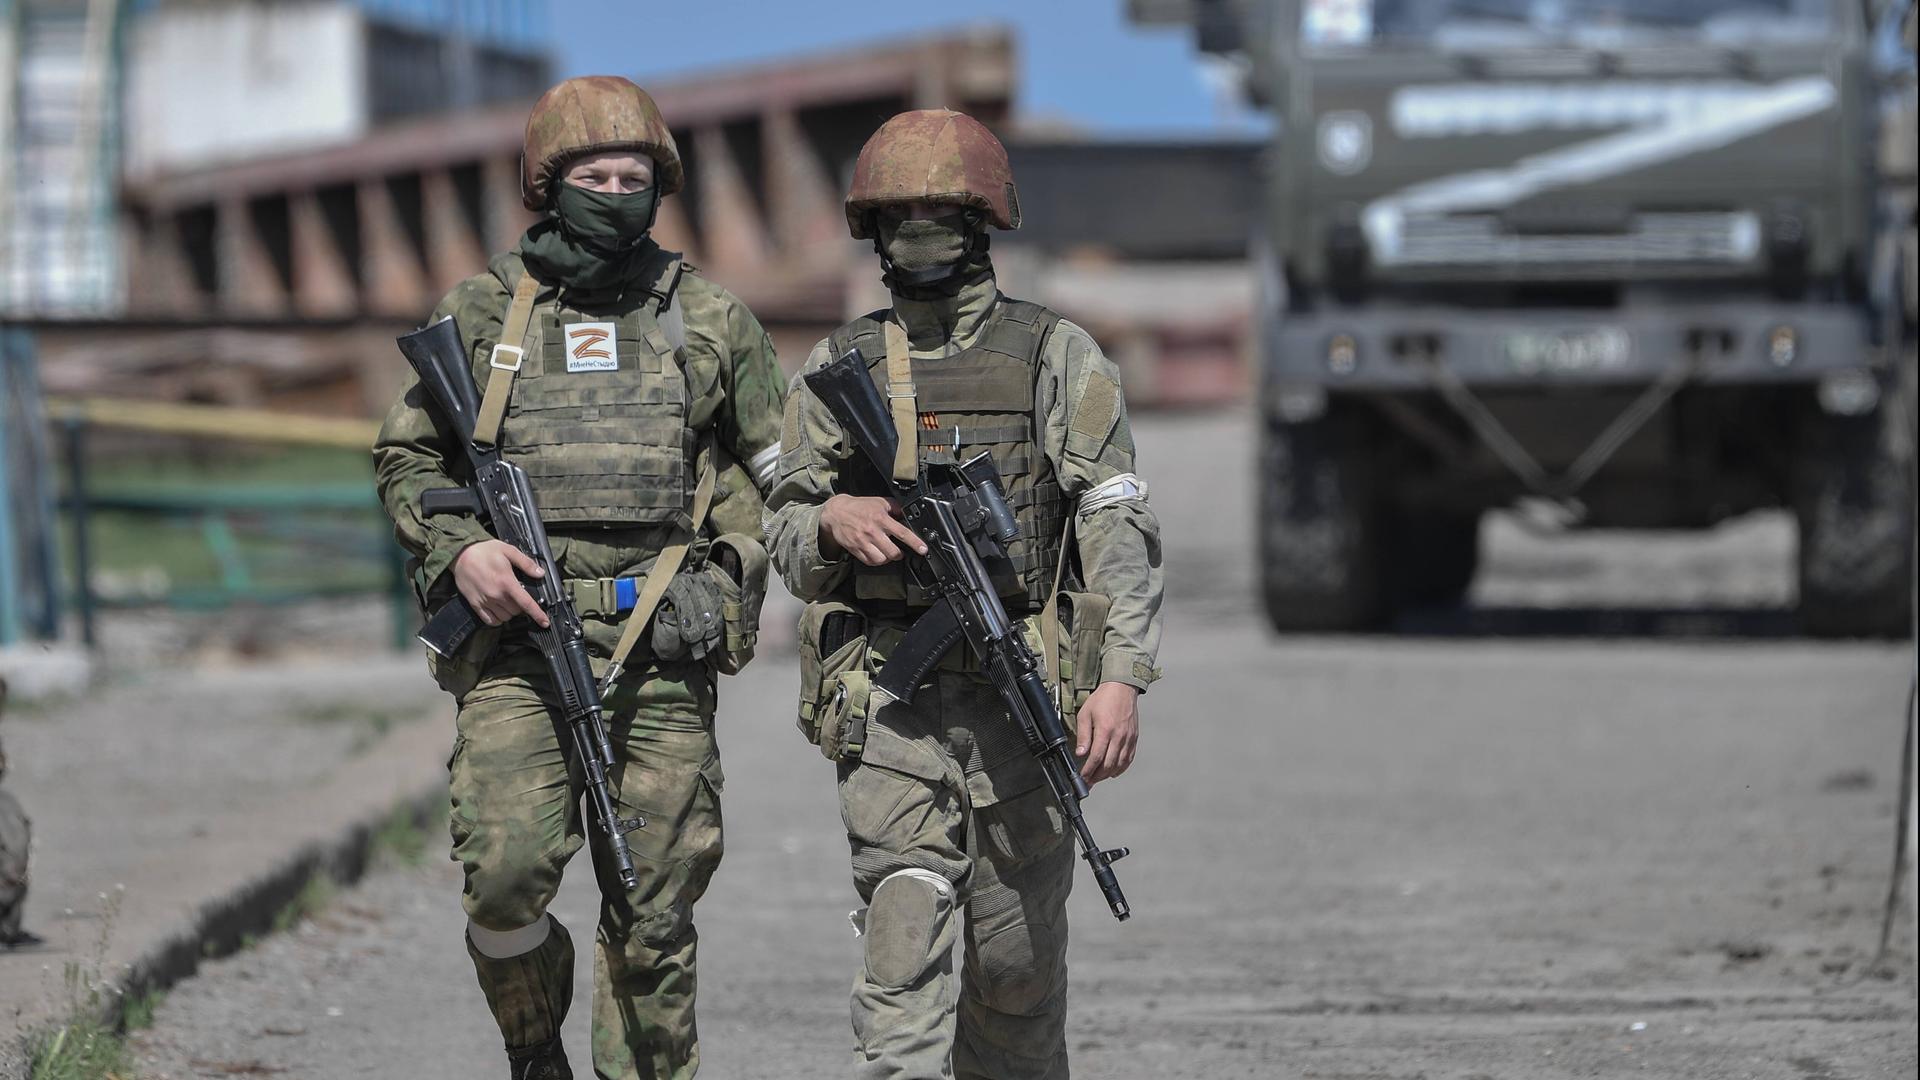 Zwei russische Soldaten in der Region Cherson, im Hintergrund ein Militärfahrzeug mit dem Z-Symbol.